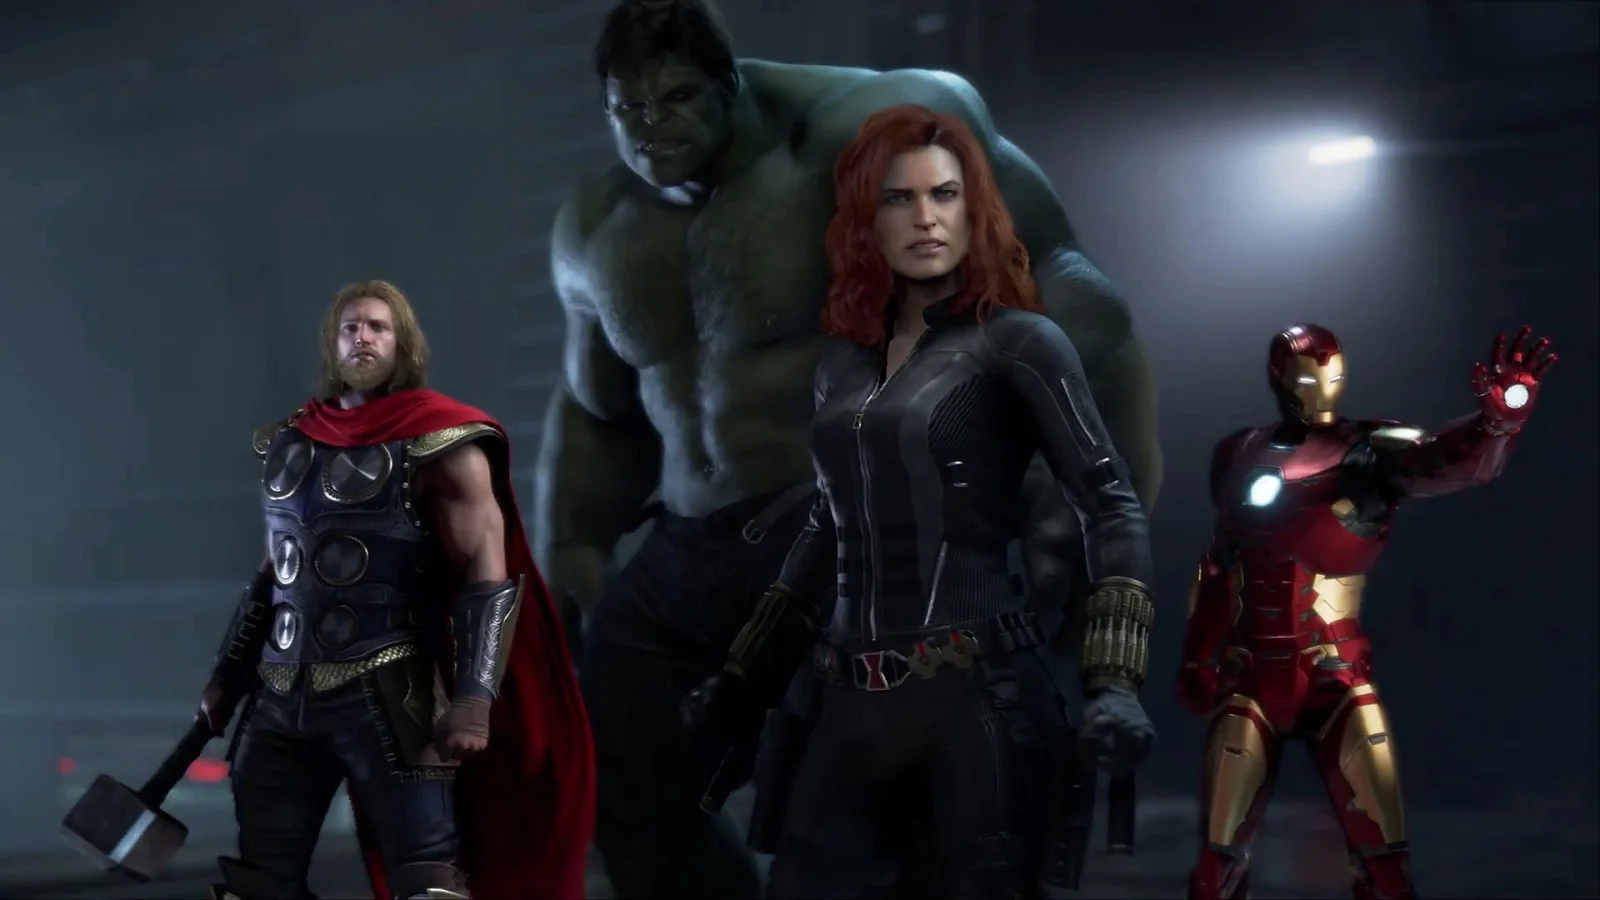 Утечка: в интернет попала запись геймплея Marvelʼs Avengers - фото 1